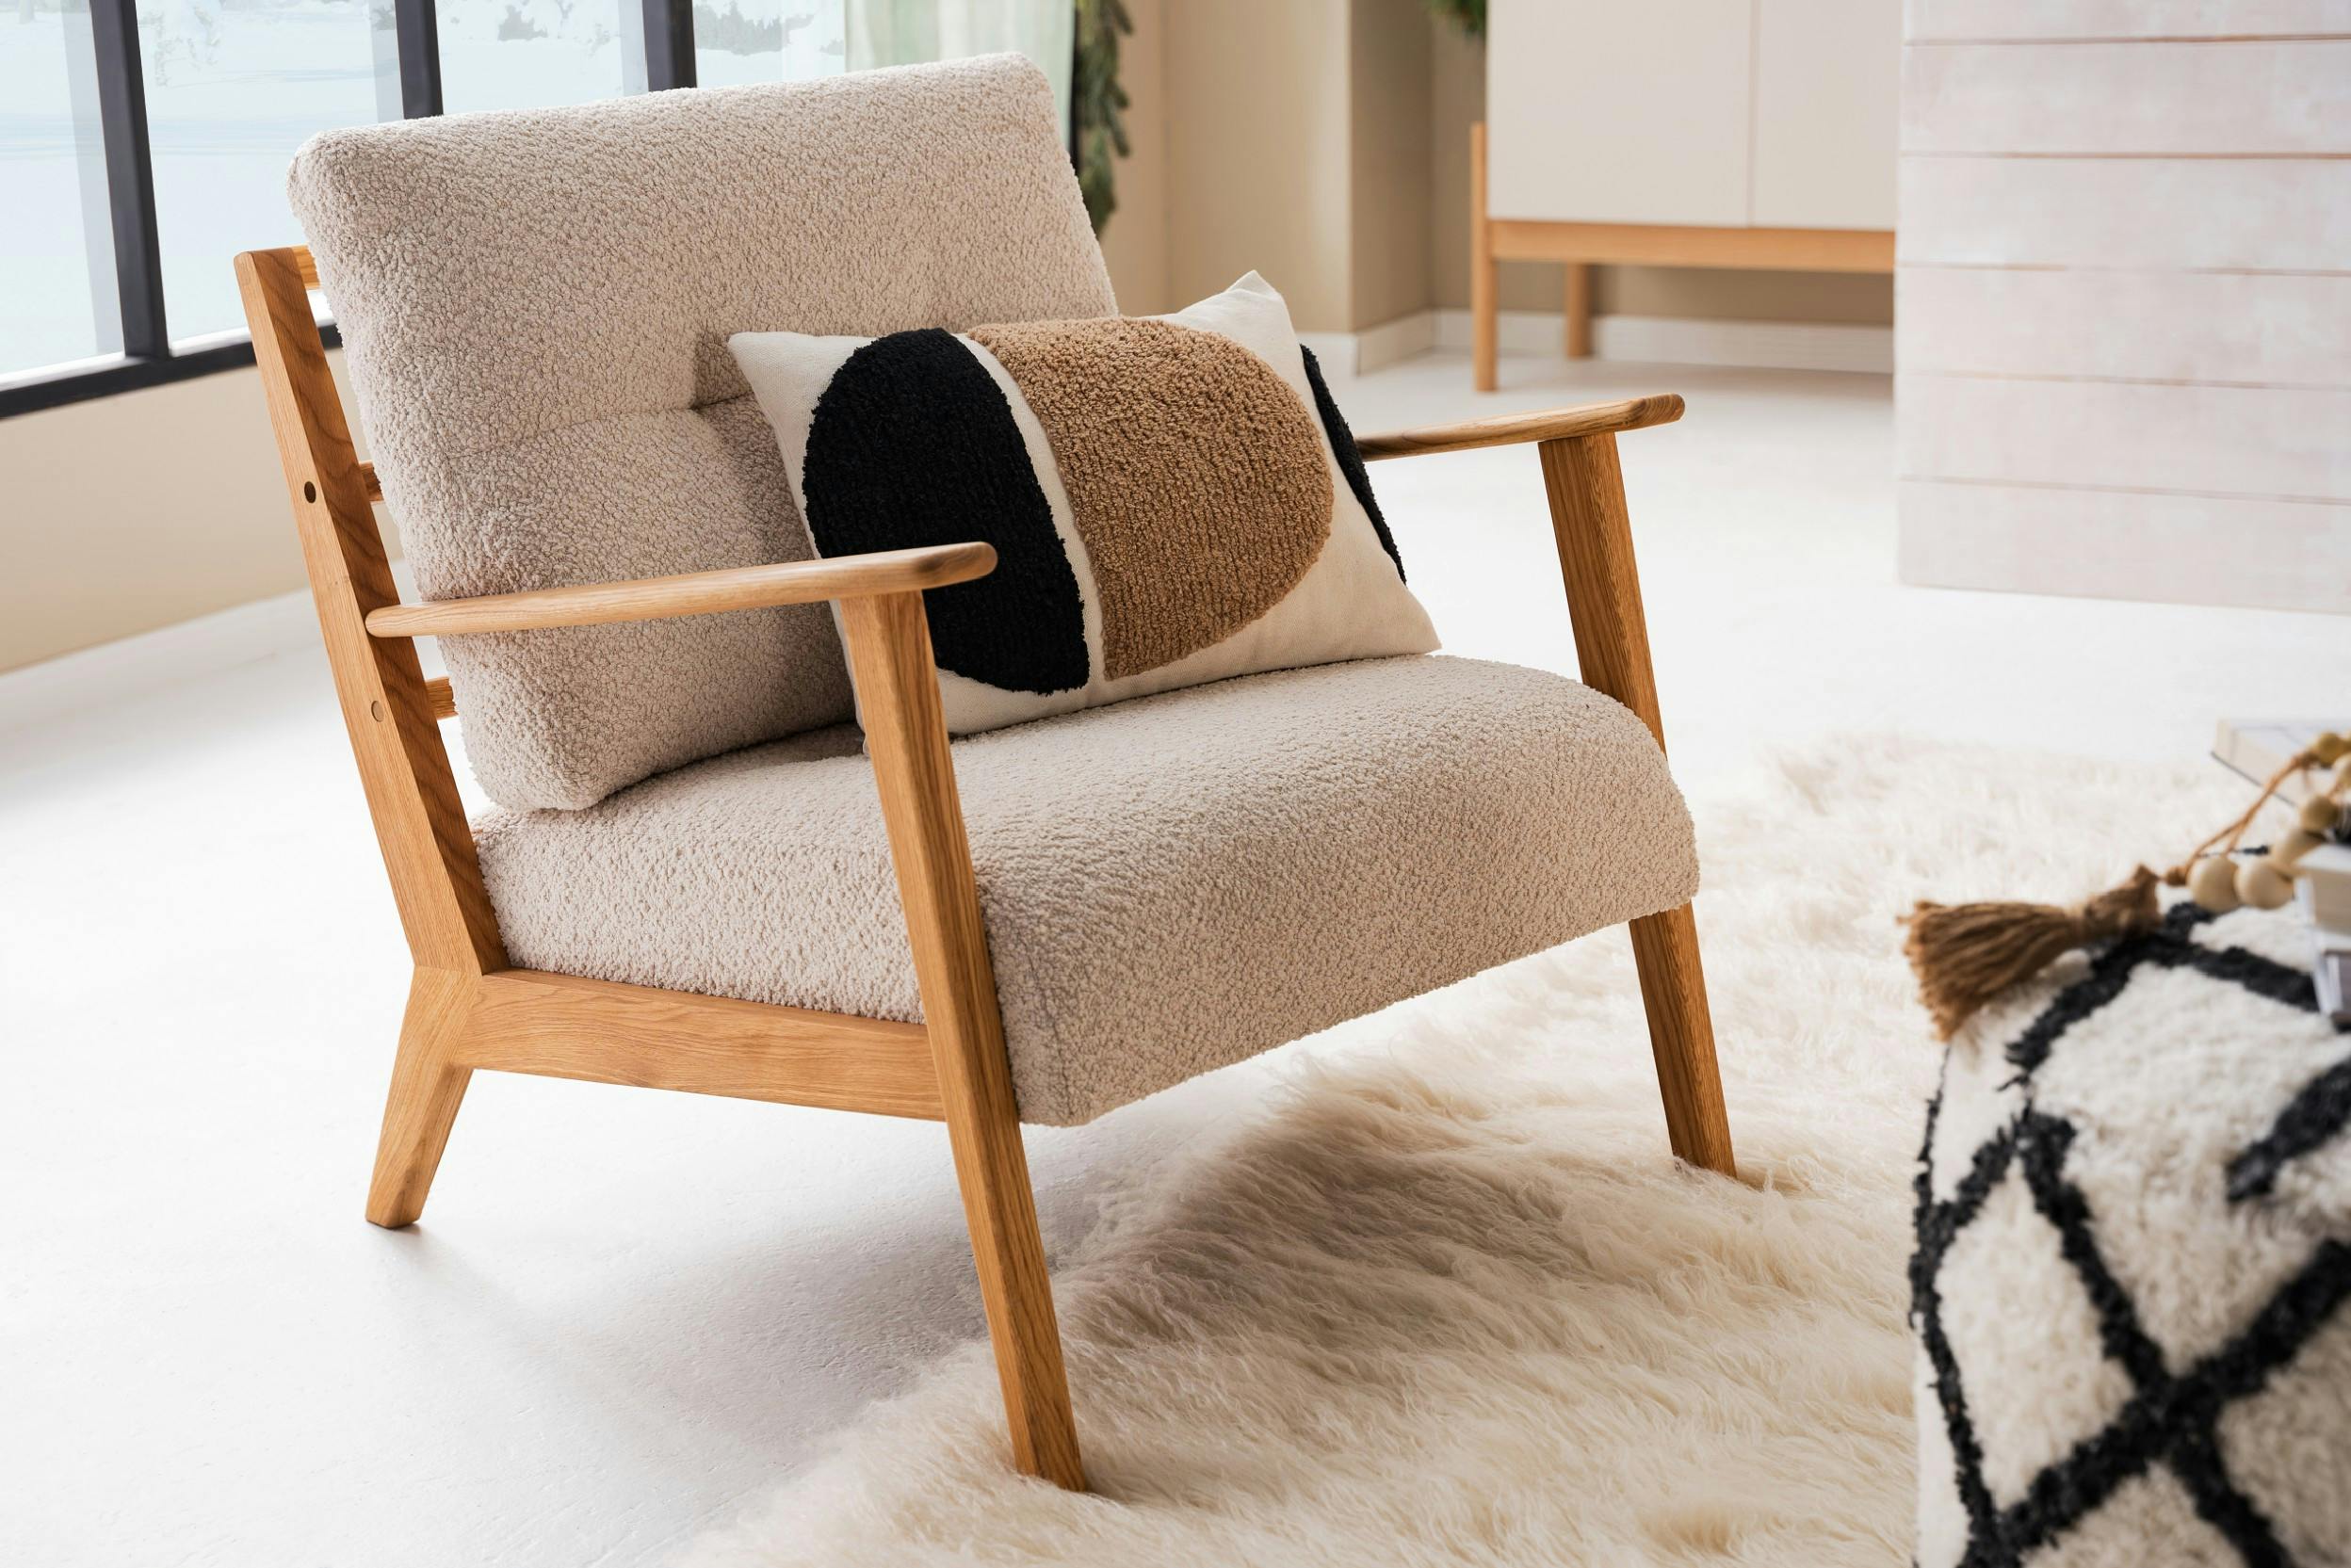 Sessel im skandinavischen Design aus einem Bouclé-Stoff mit einem Kissen darauf